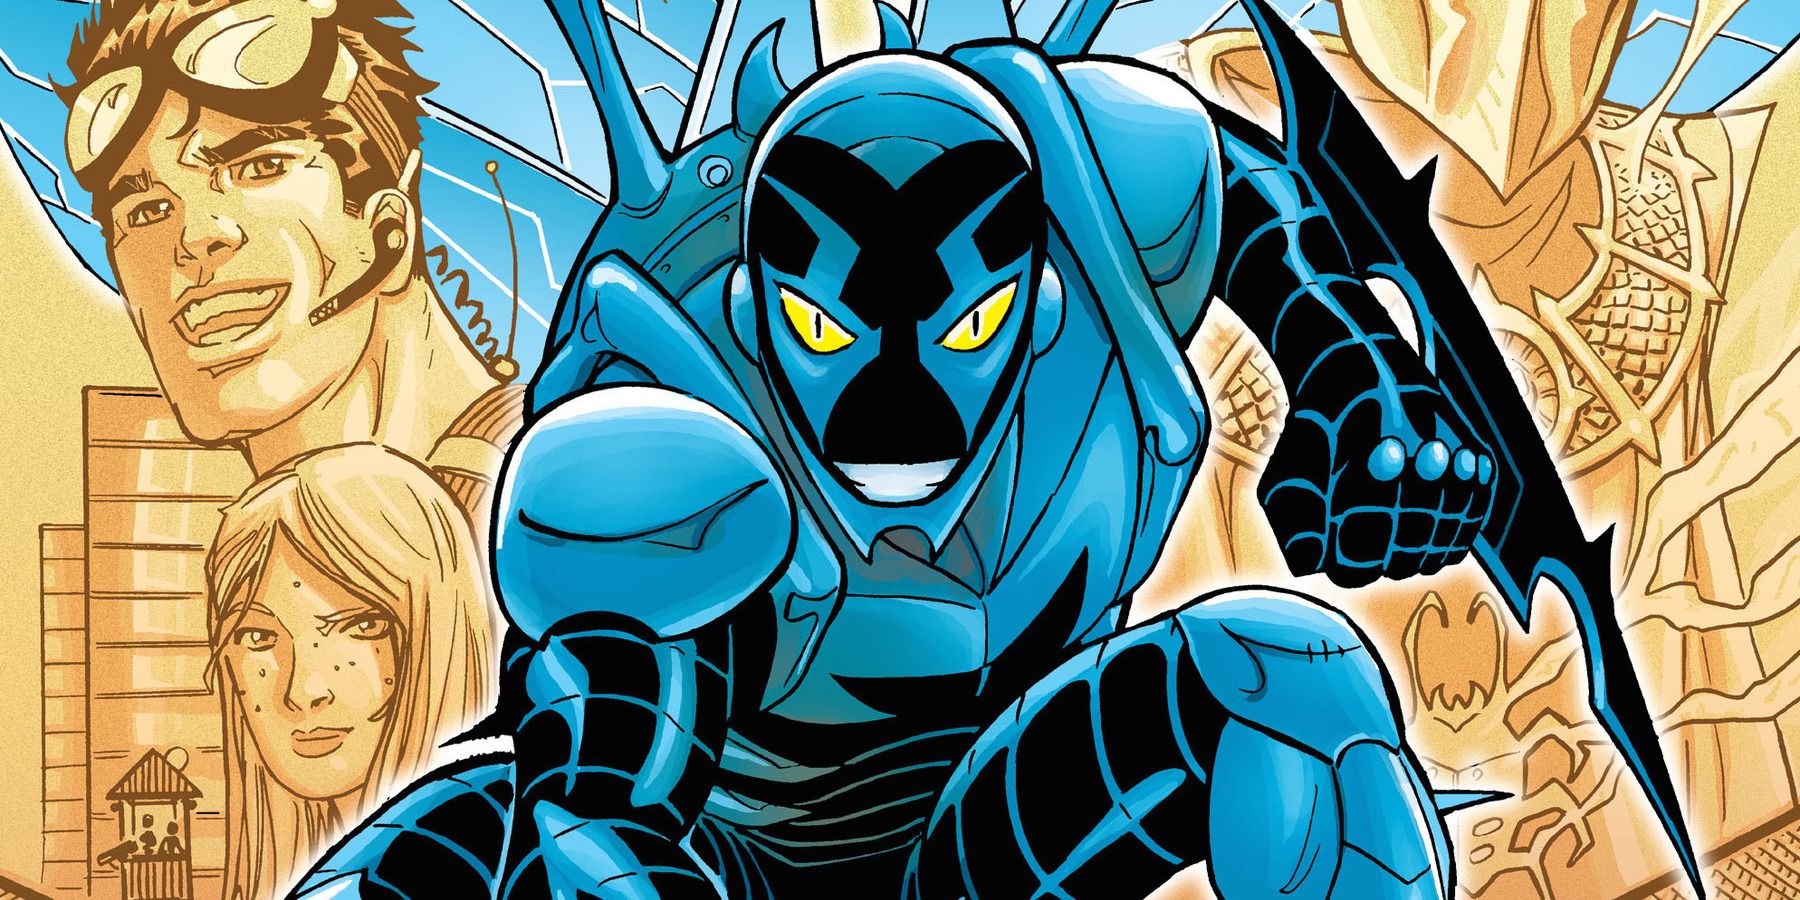 Jaime Reyes as the Blue Beetle